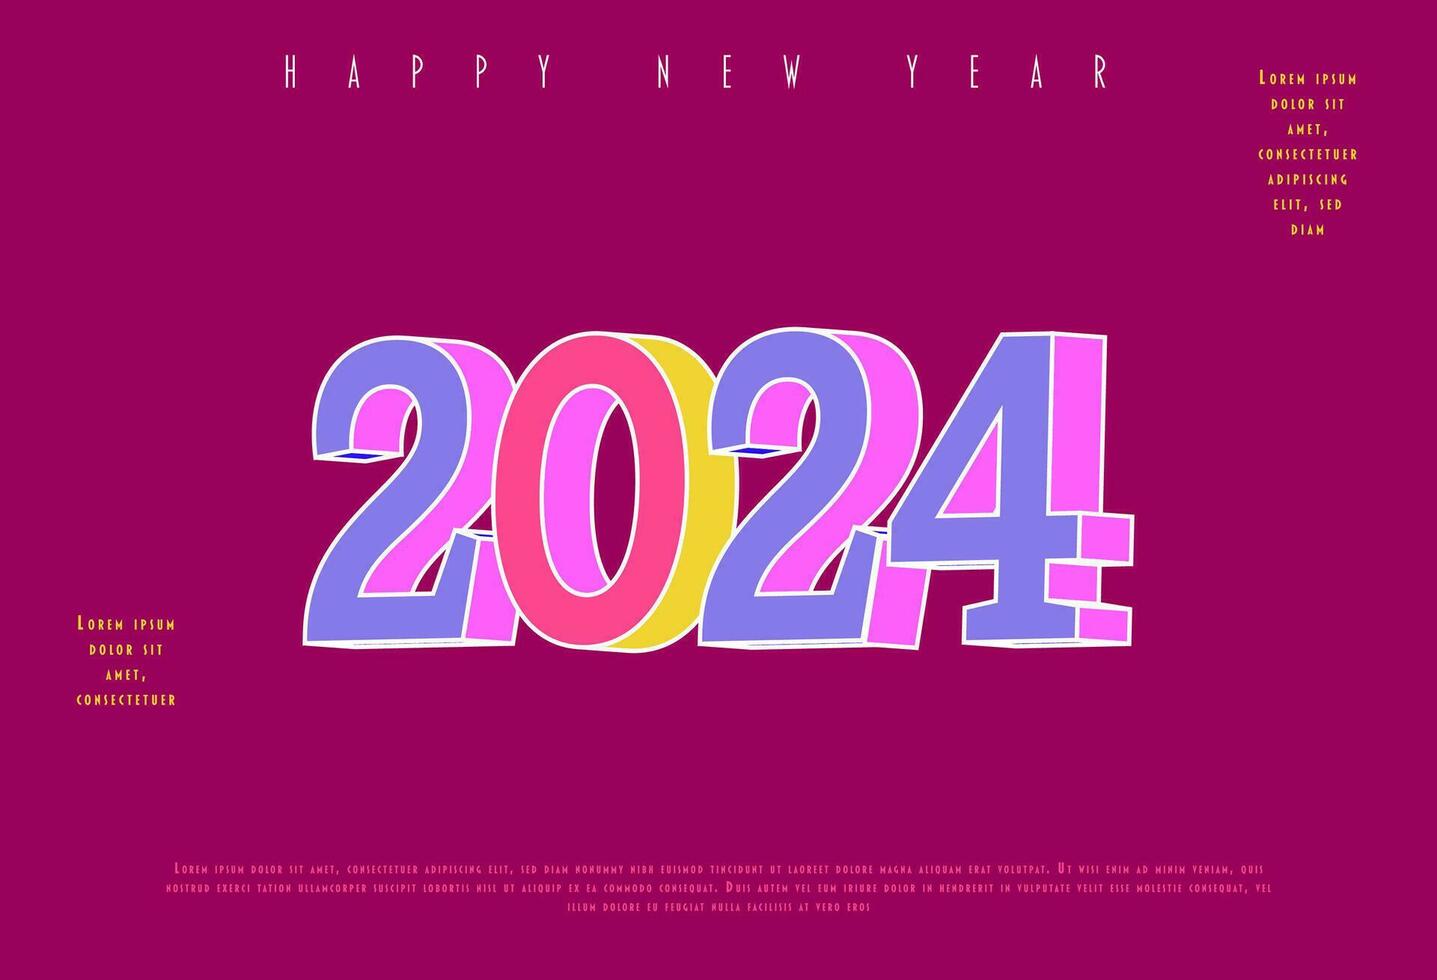 2024 gelukkig nieuw jaar. sjabloon met kleurrijk brief logo voor kalender, poster, folder, spandoek. vector